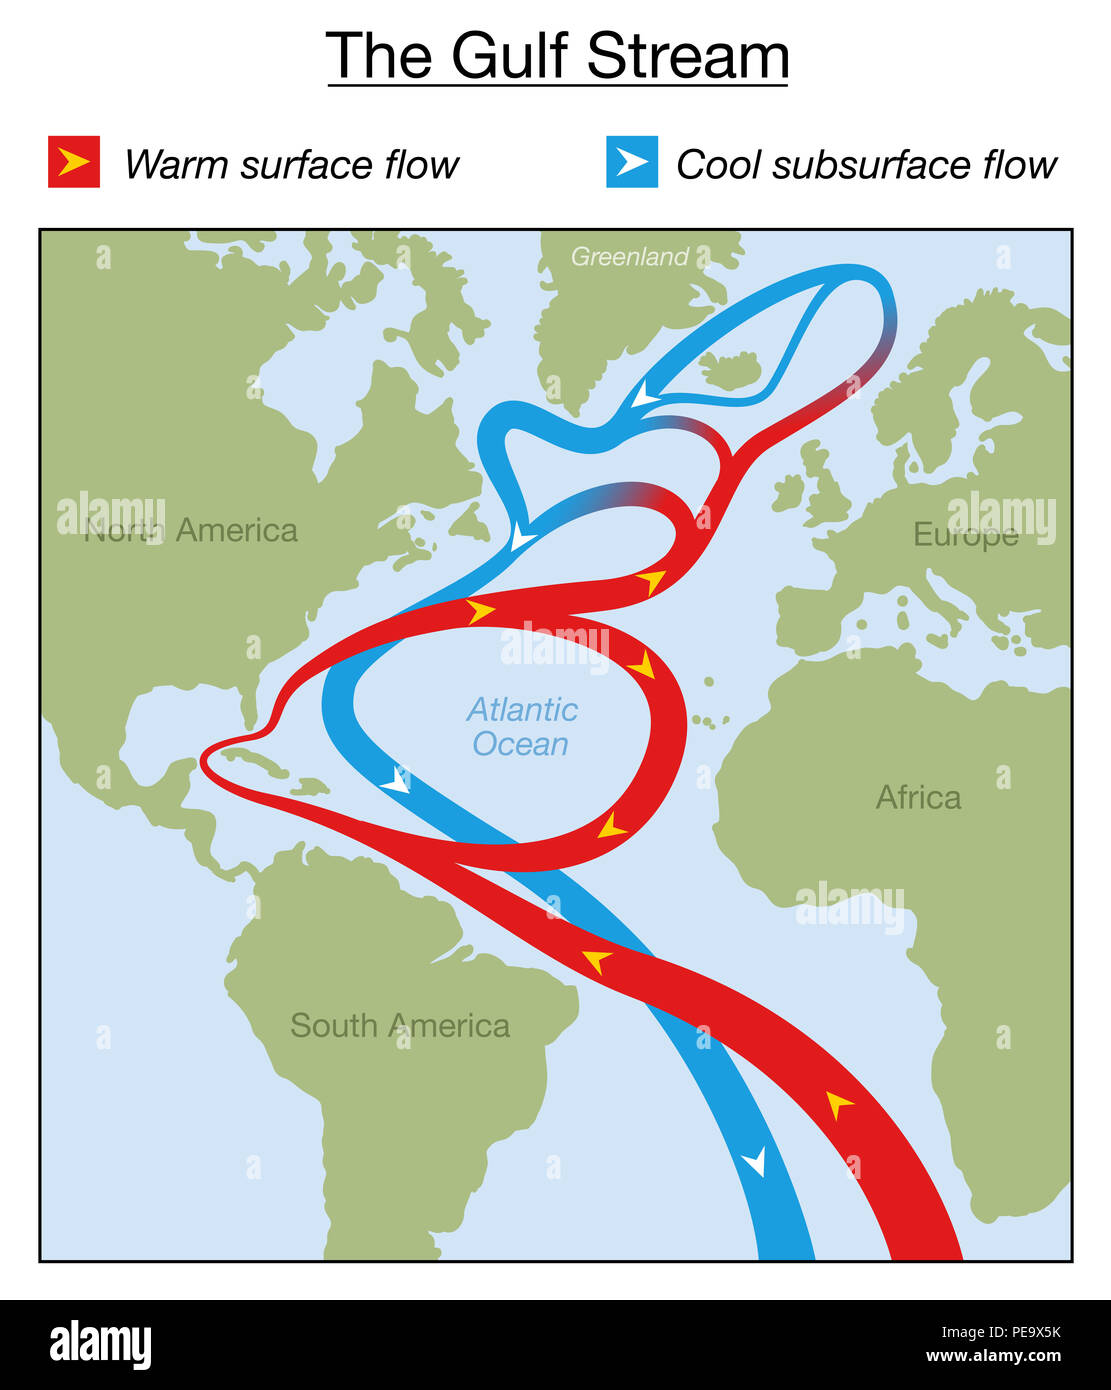 Gulf Stream grafico. Superficie calda e fredda flusso di subsurface nell'Oceano Atlantico tra il nord e il Sud America, Africa, Europa e la Groenlandia. Foto Stock